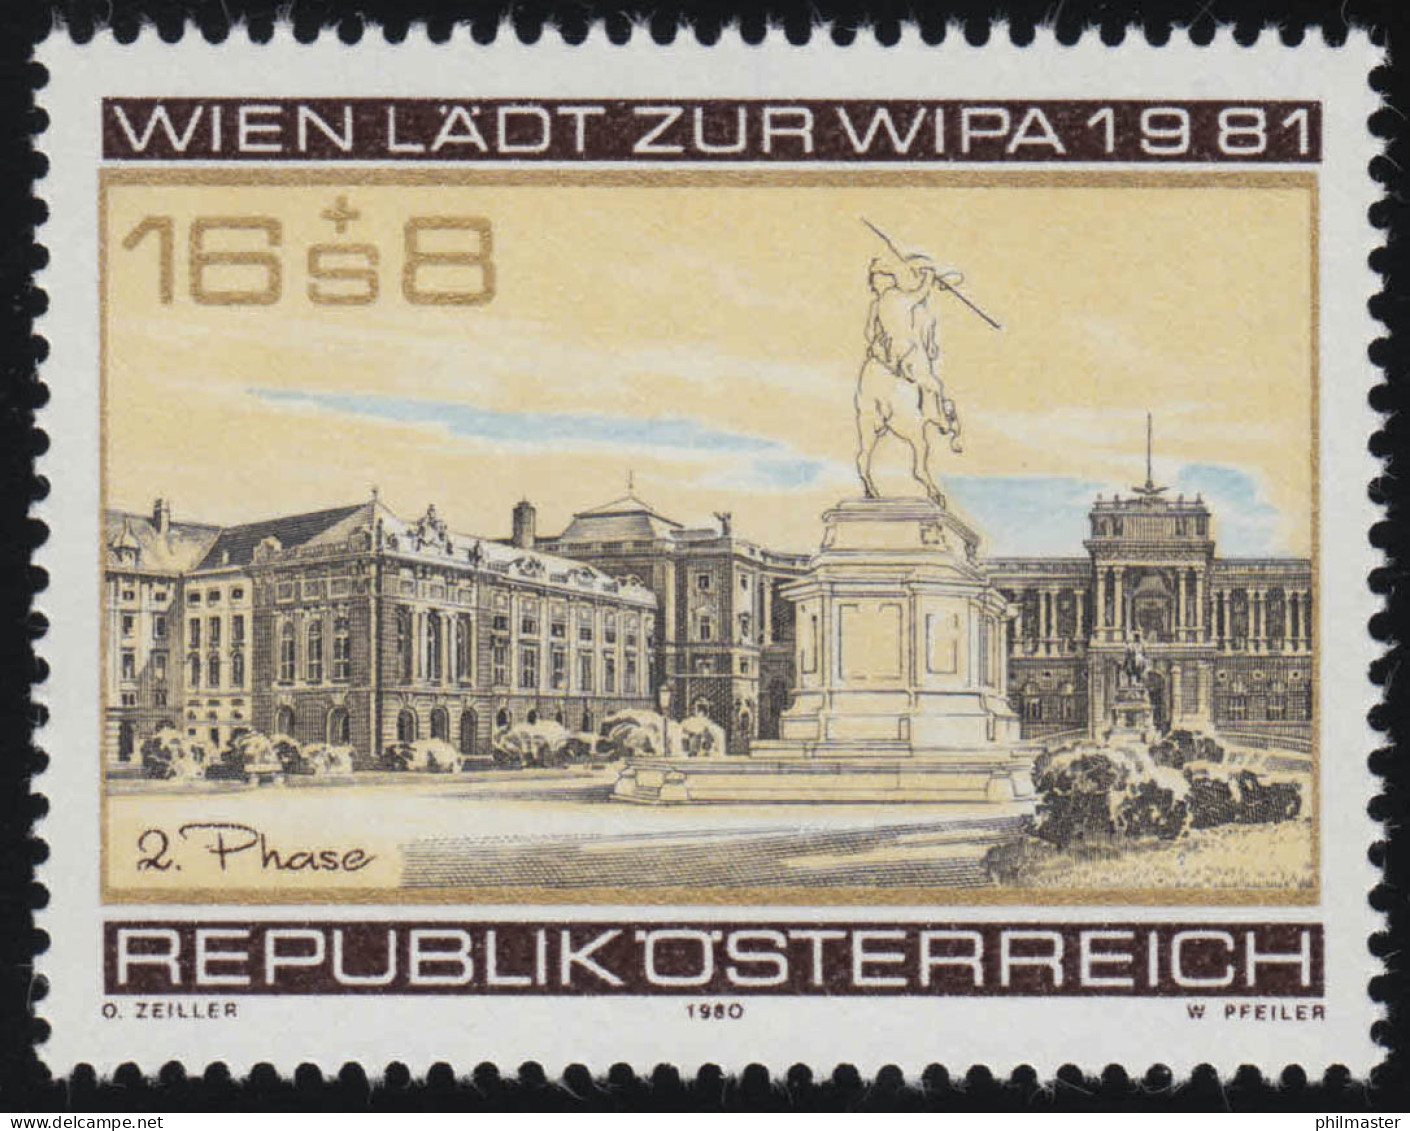 1662 WIPA 1981/ Wien, Heldenplatz, Denkmal, Hofburg, 2. Produktion 16 S + 8 S ** - Ungebraucht